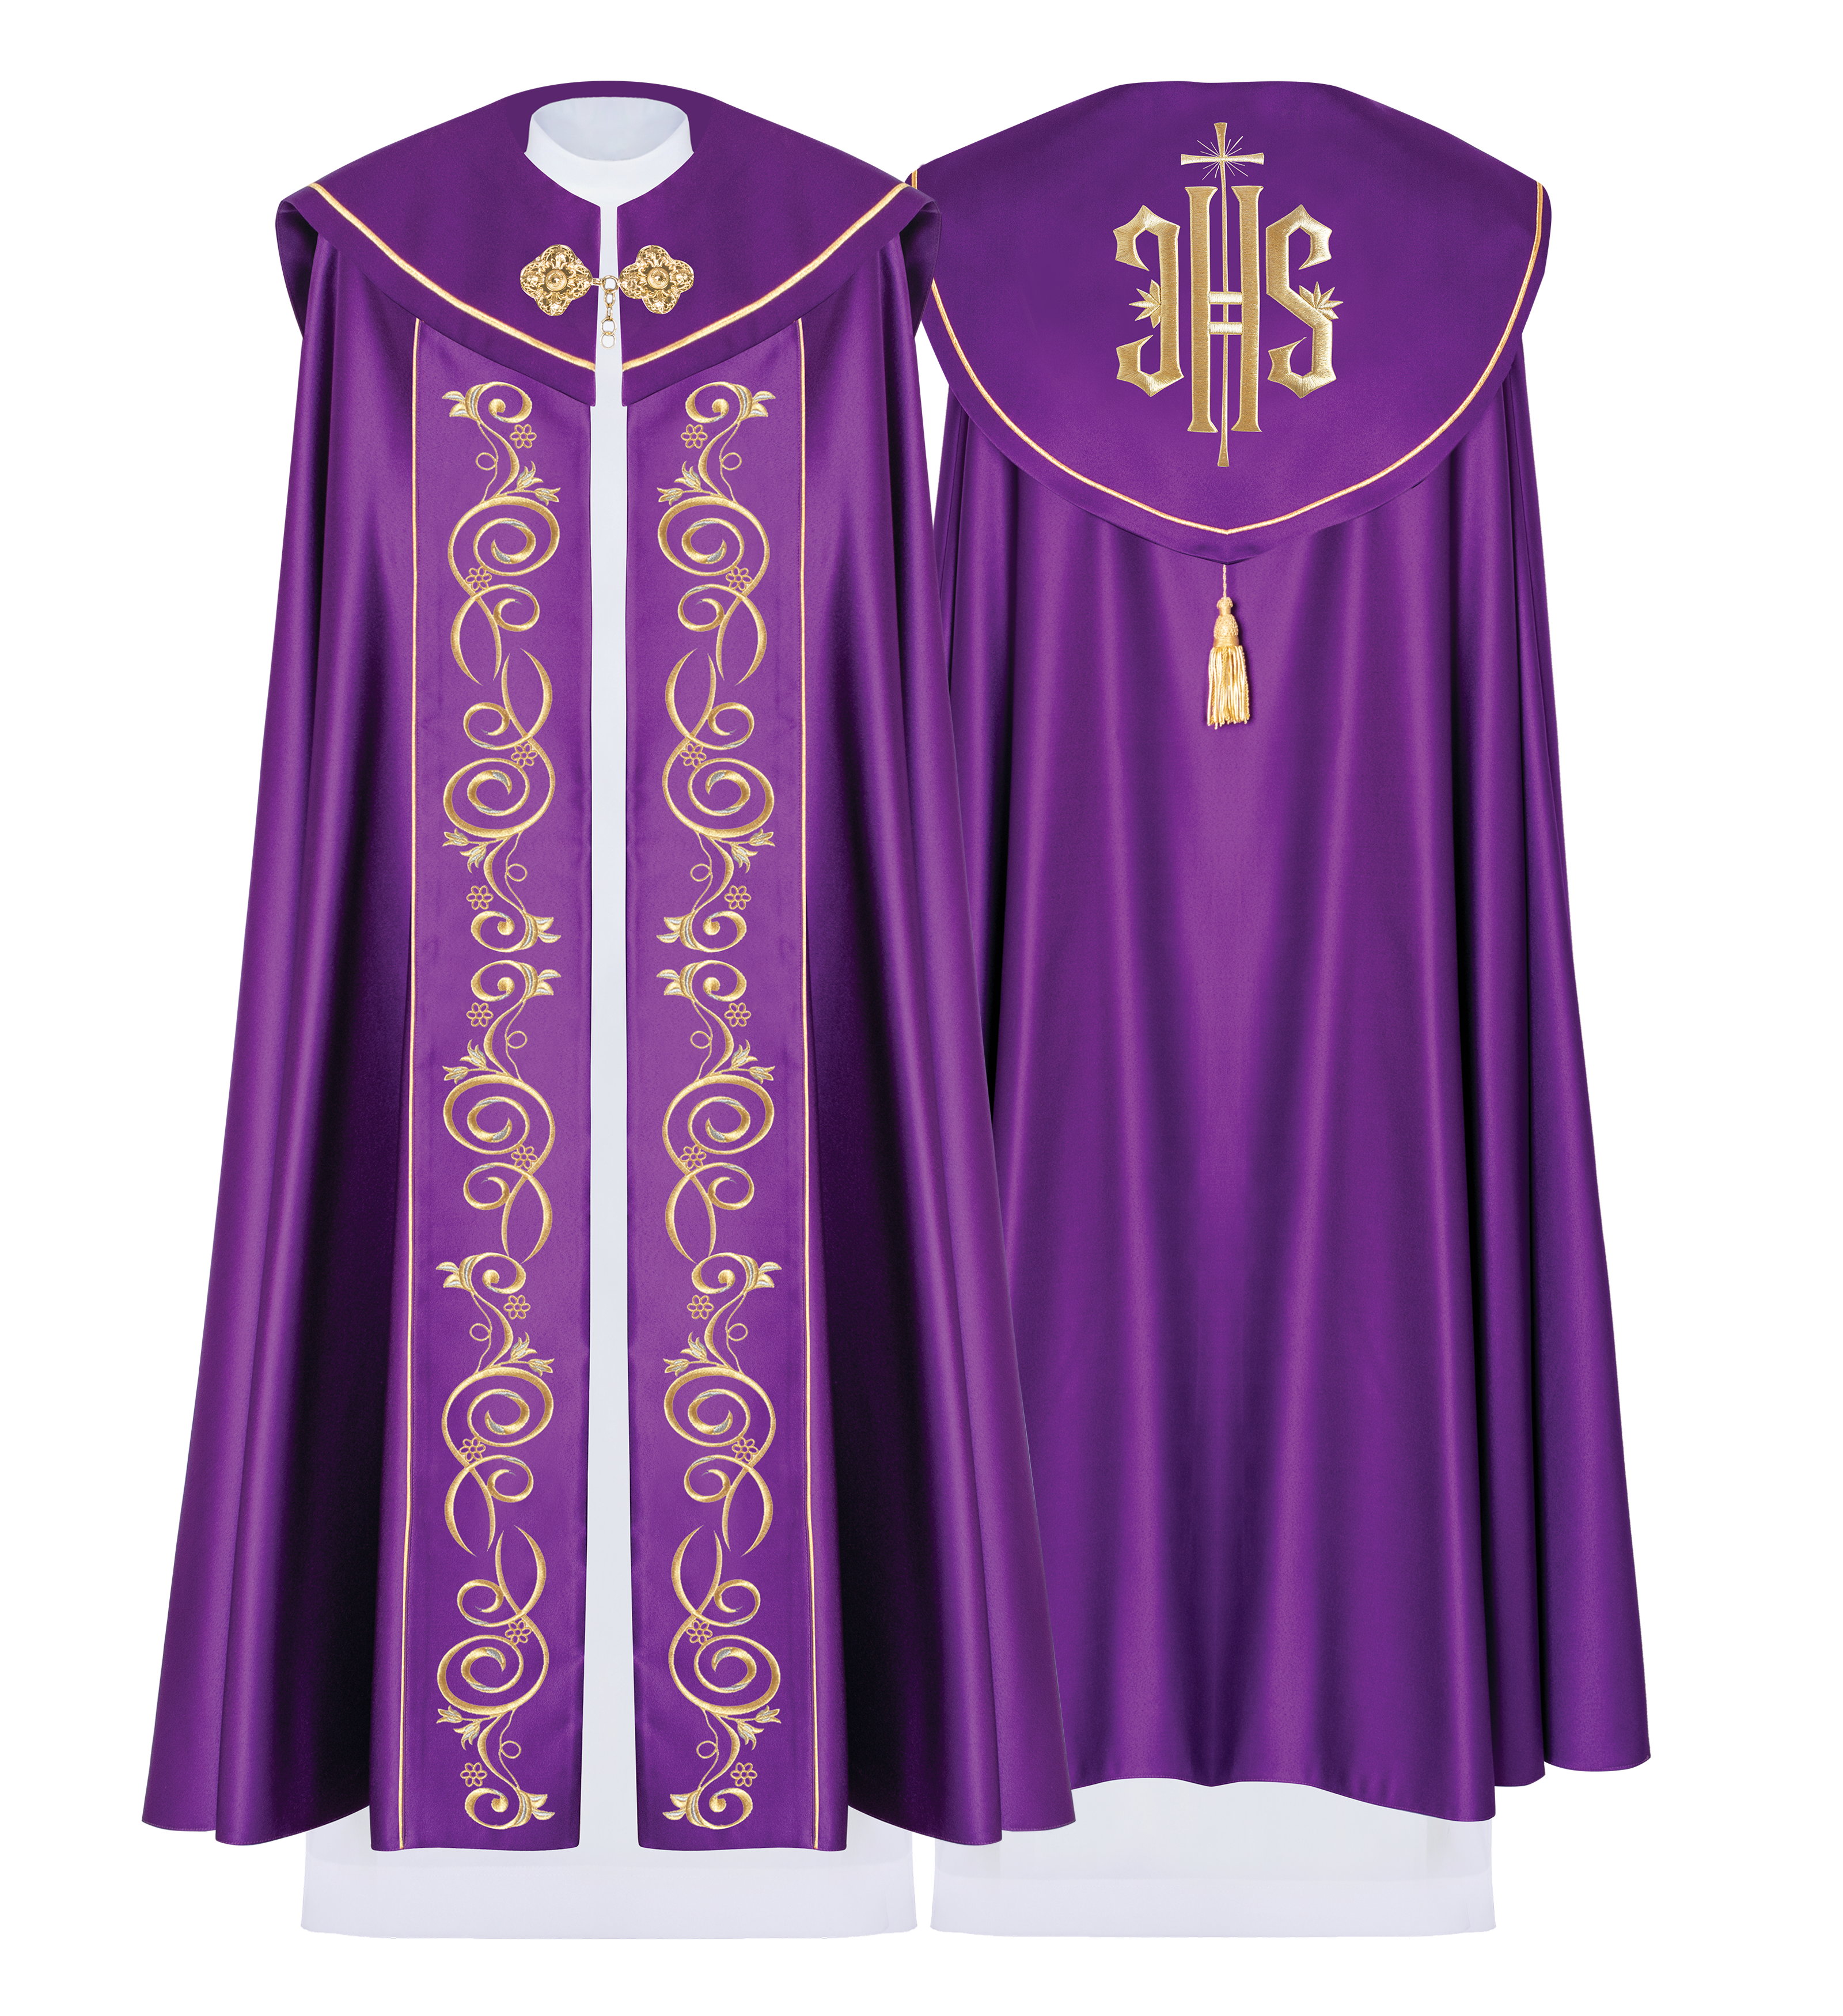 Fioletowa kapa liturgiczna z złotym haftem